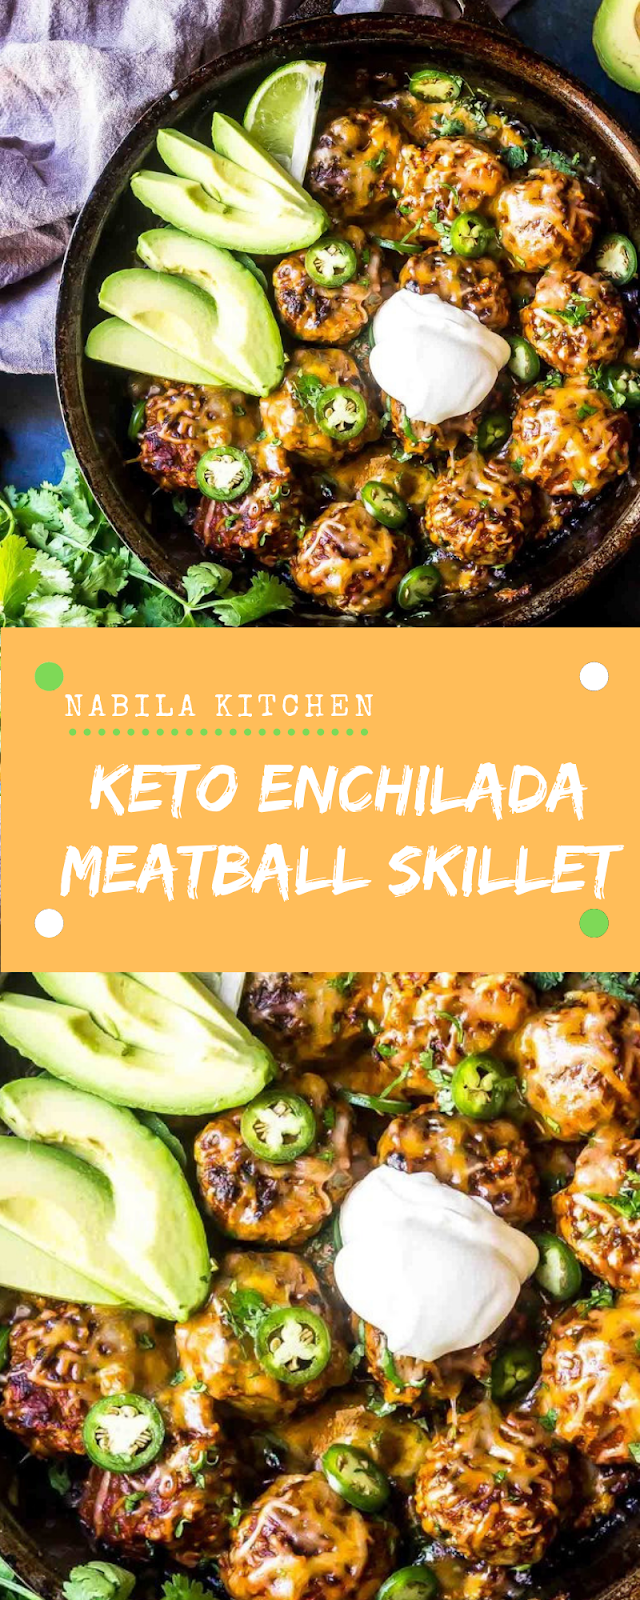 Keto Enchilada Meatball Skillet